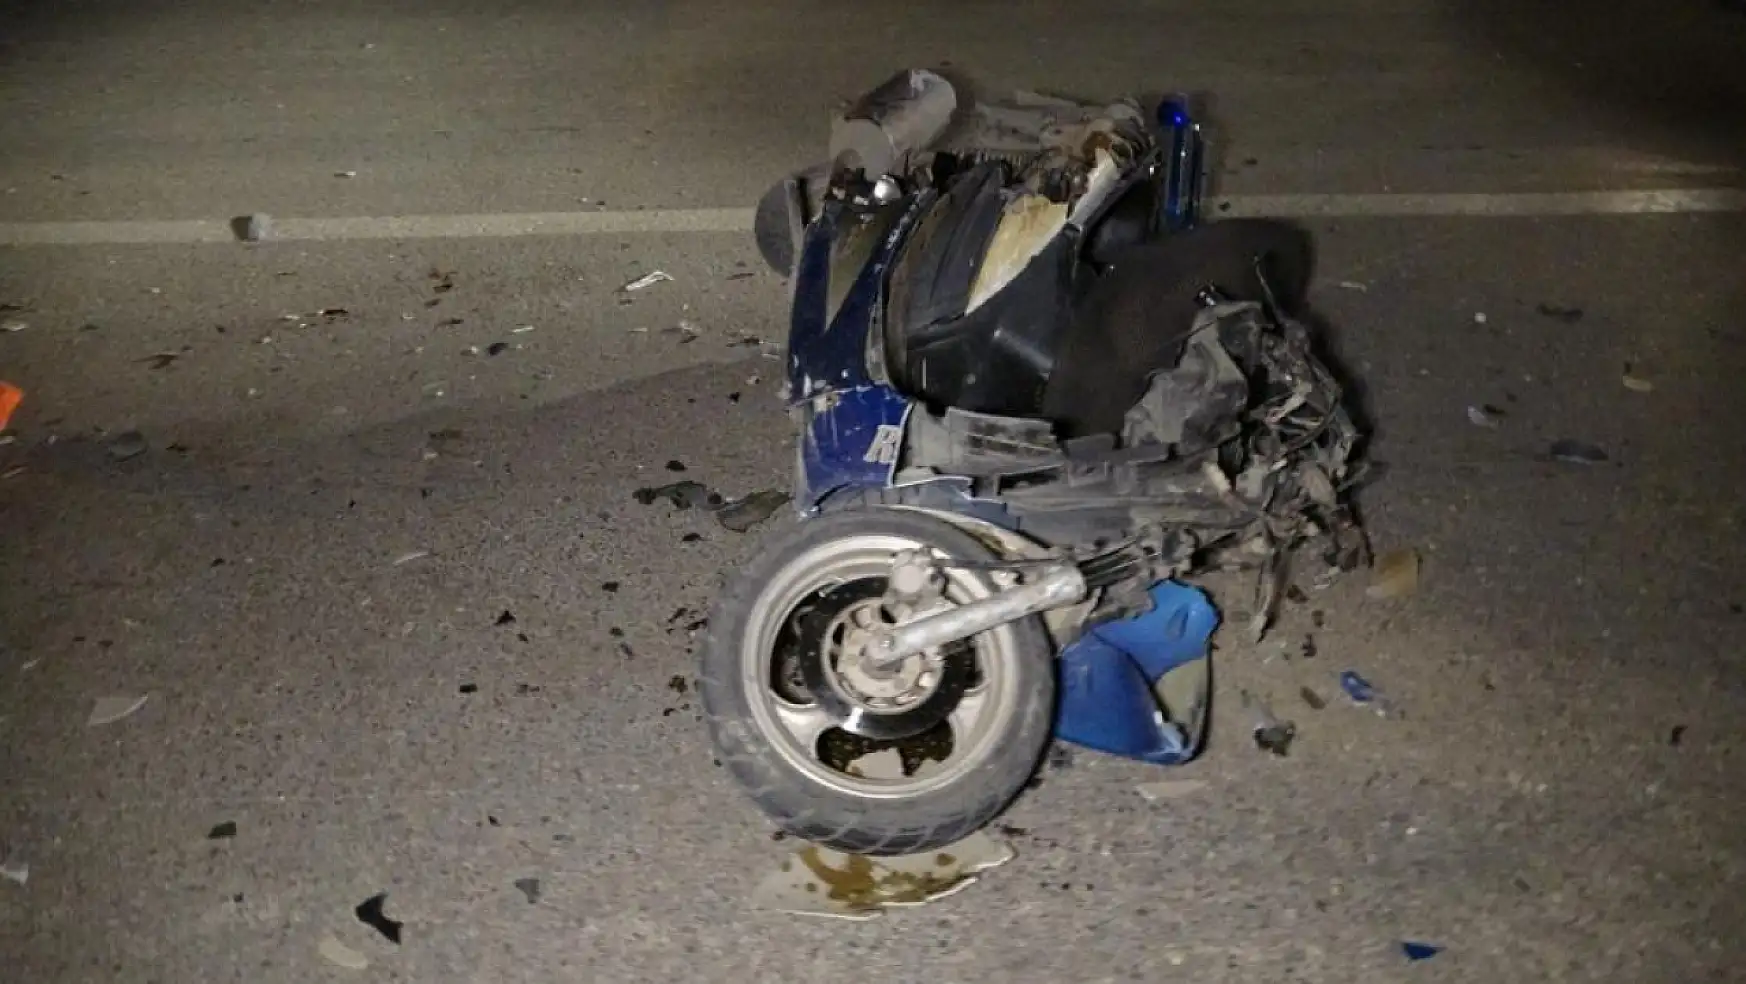 Kaza yapıp yaralanan motosiklet sürücüsü 2.66 promil alkollü çıktı